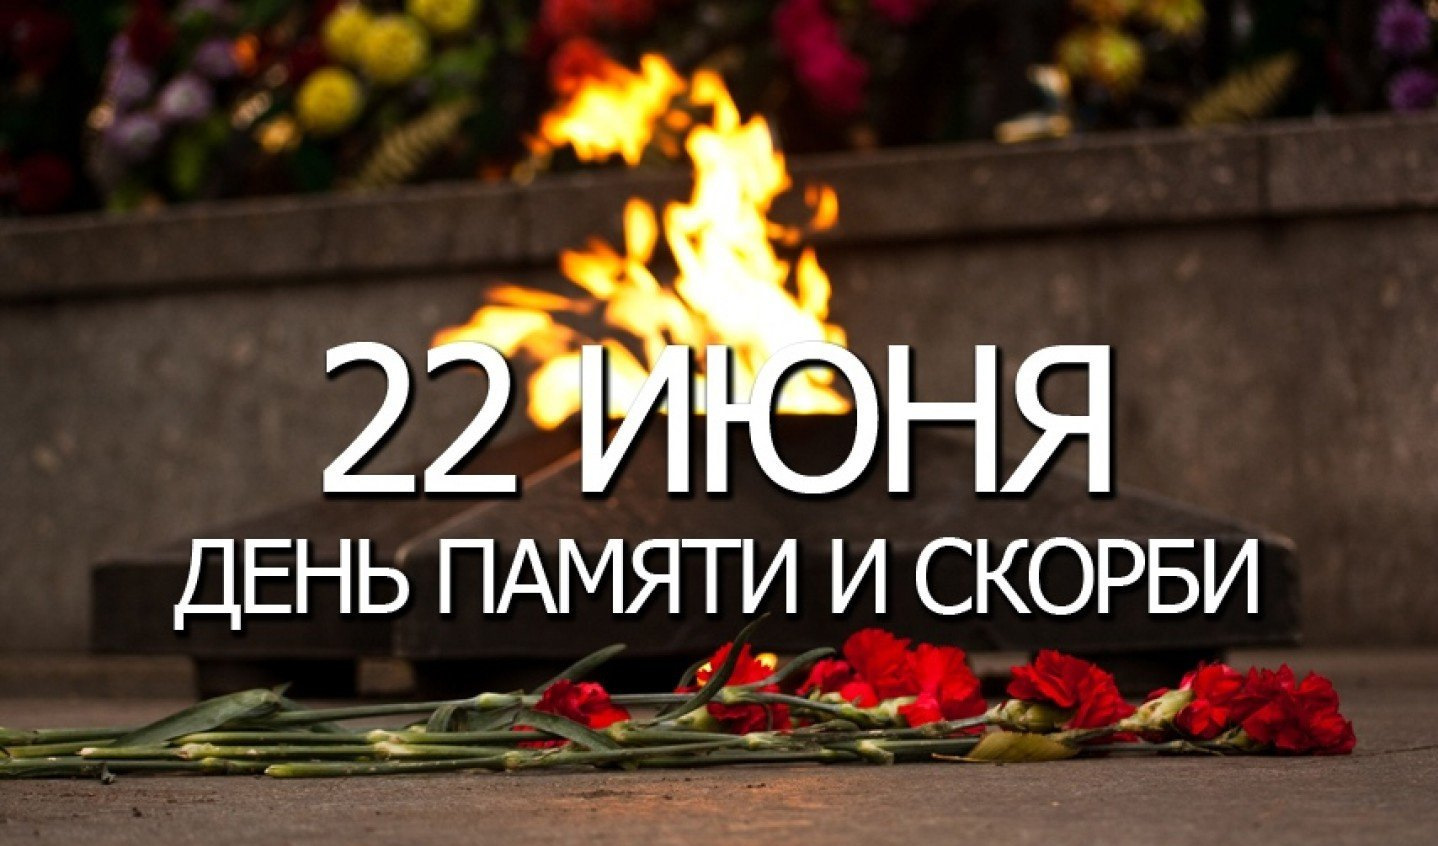 День памяти и скорби. 22 Июня день памяти. День памяти и скорби — день начала Великой Отечественной войны. День скорби 22 июня.